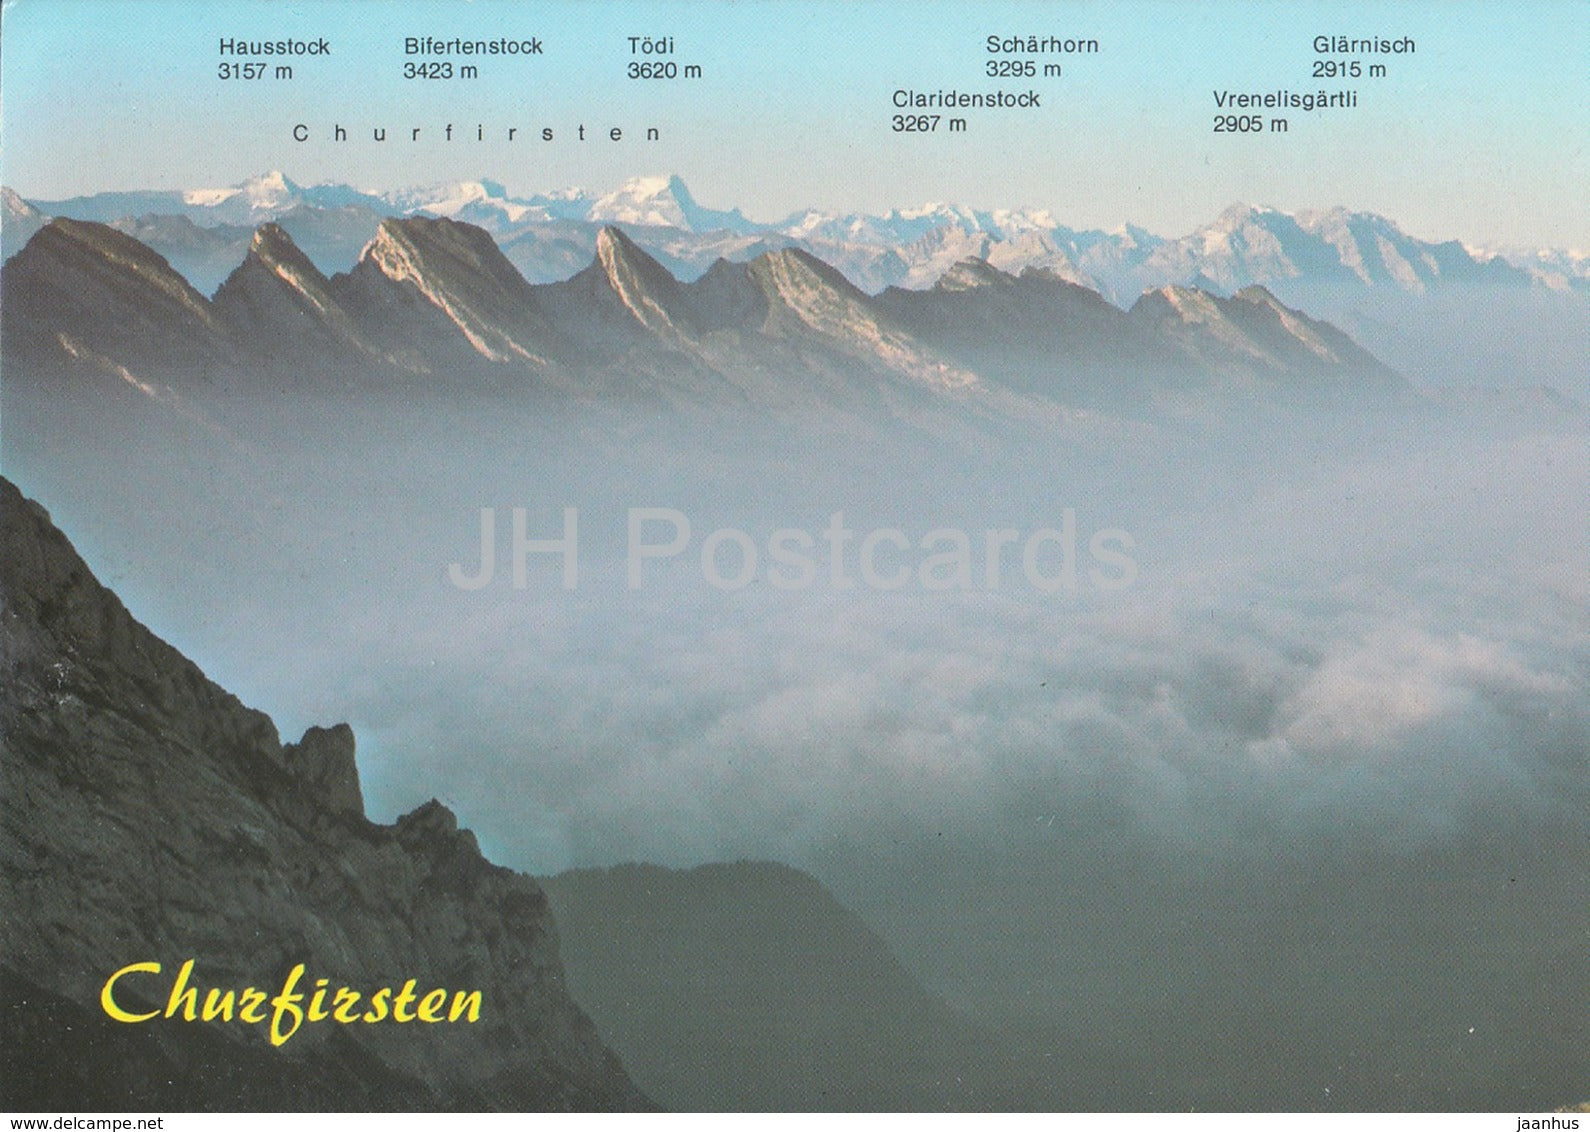 Churfirsten - Santis 2502 m - Blick auf Churfirsten und Glarner Alpen - 2004 - Switzerland - used - JH Postcards